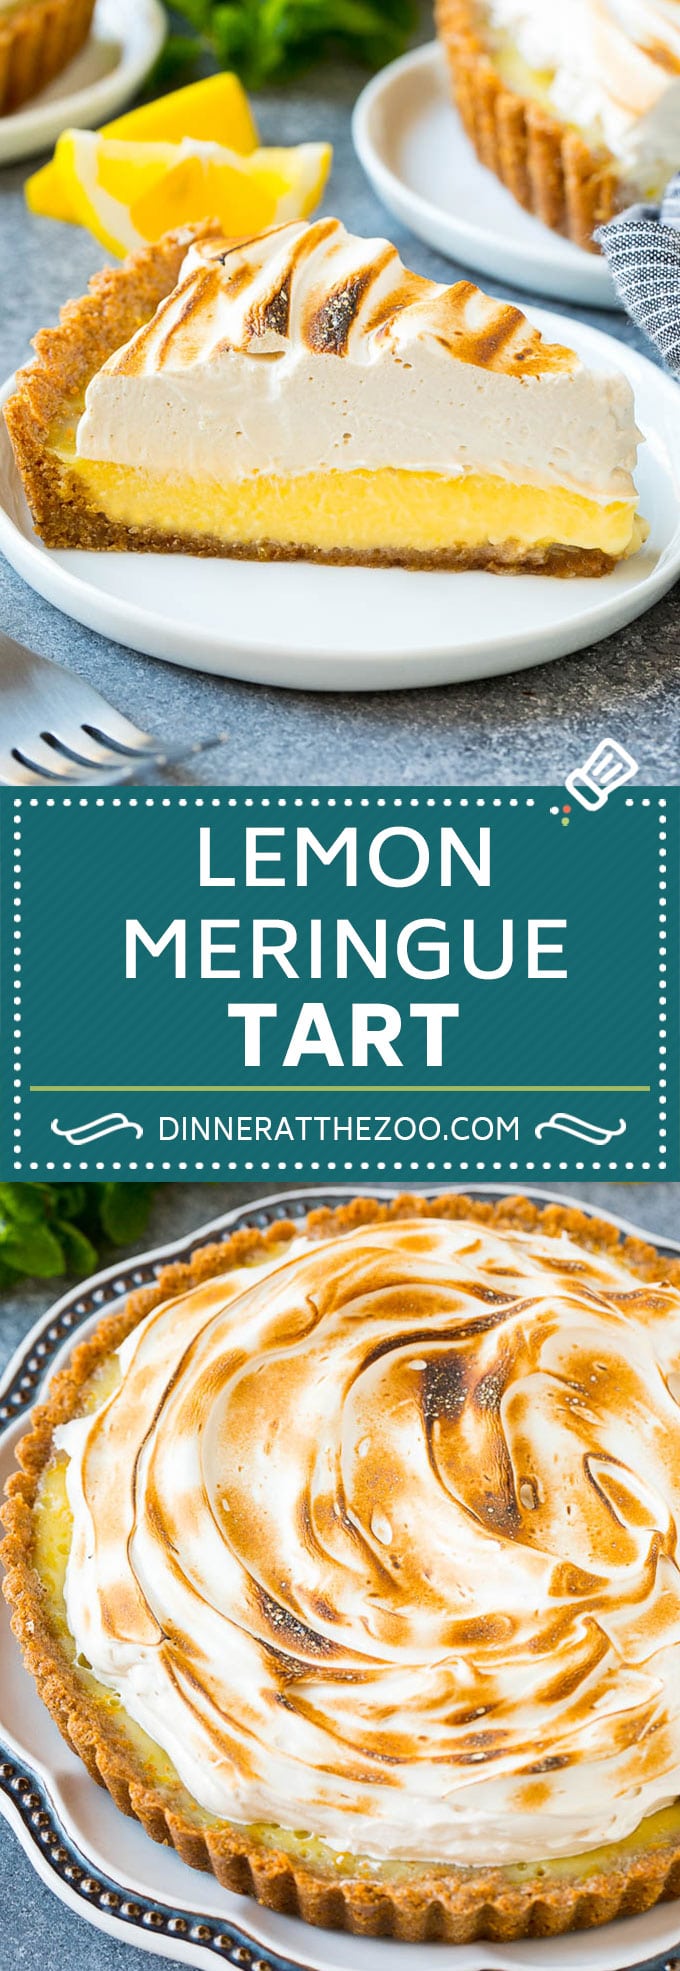 Lemon Meringue Tart | Lemon Dessert | Lemon Tart #tart #lemon #dessert #sweets #dinneratthezoo